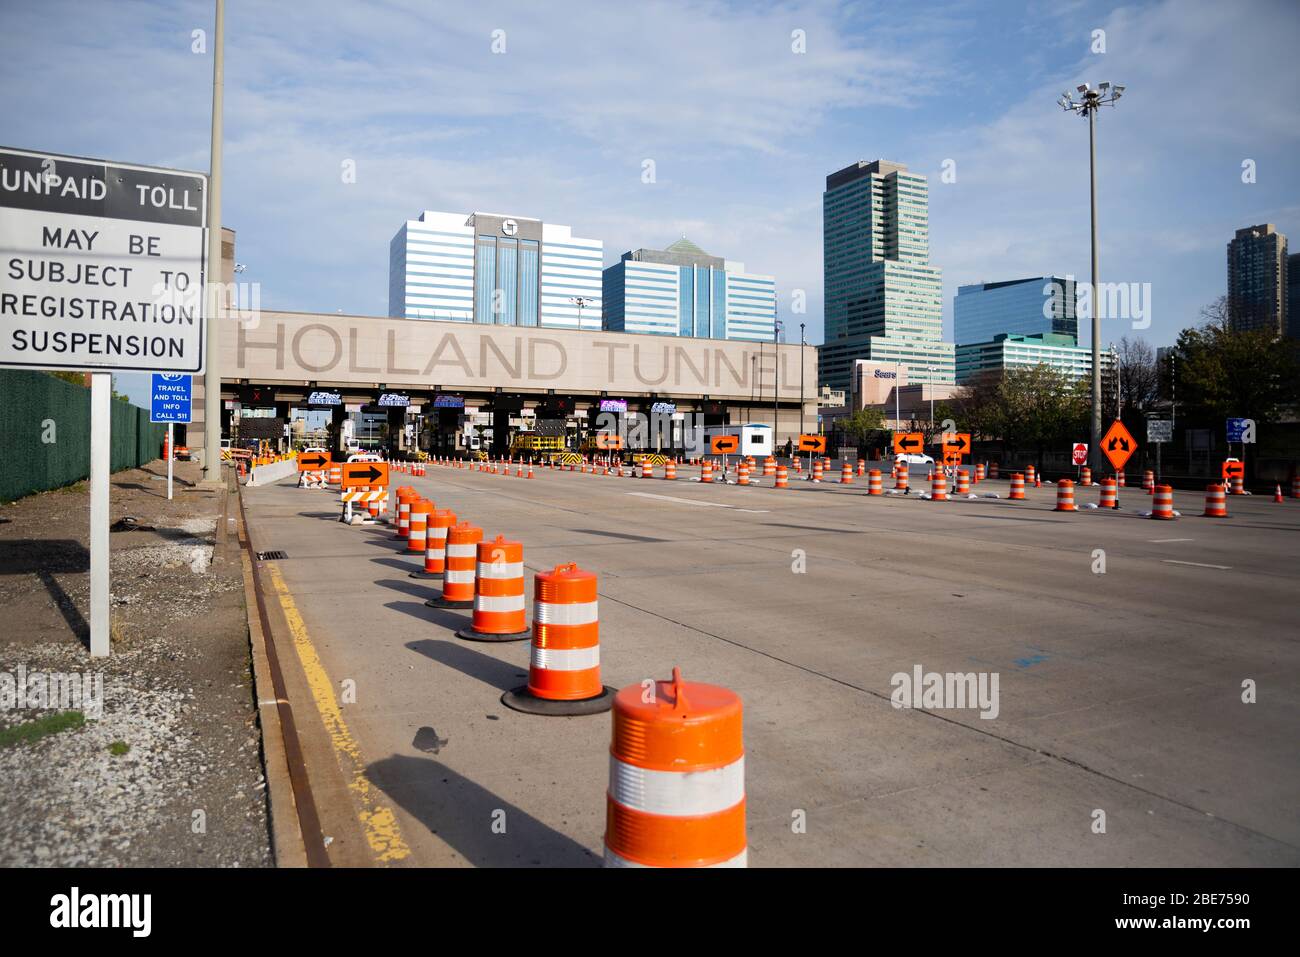 Jersey City, NJ - April 12 2020: Der Holland Tunnel Eingang in NYC ohne Autos. Verringerter Datenverkehr aufgrund des Ausbruchs von COVID-19 Stockfoto